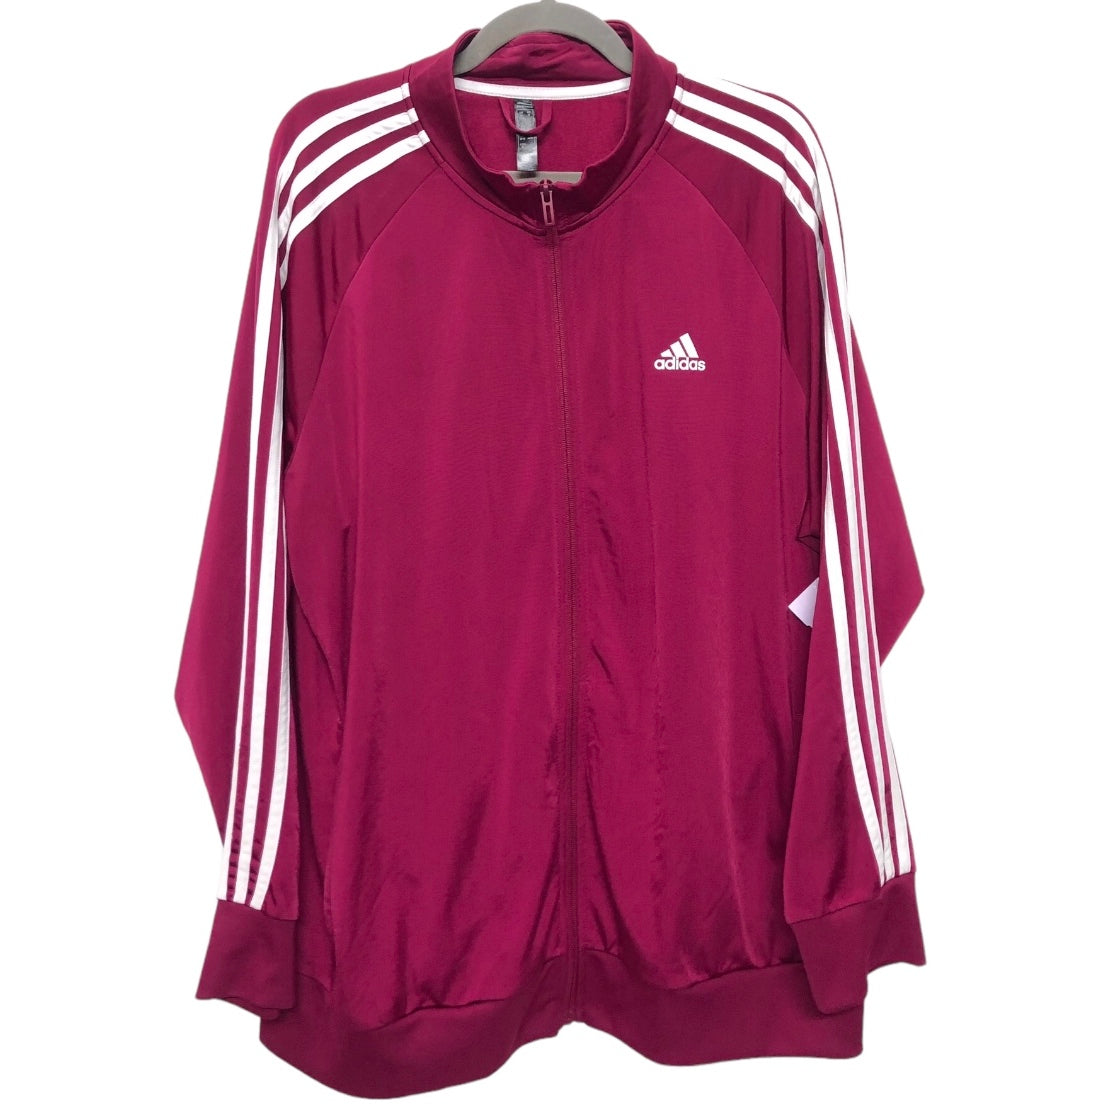 Red & White Athletic Jacket Adidas, Size 3x